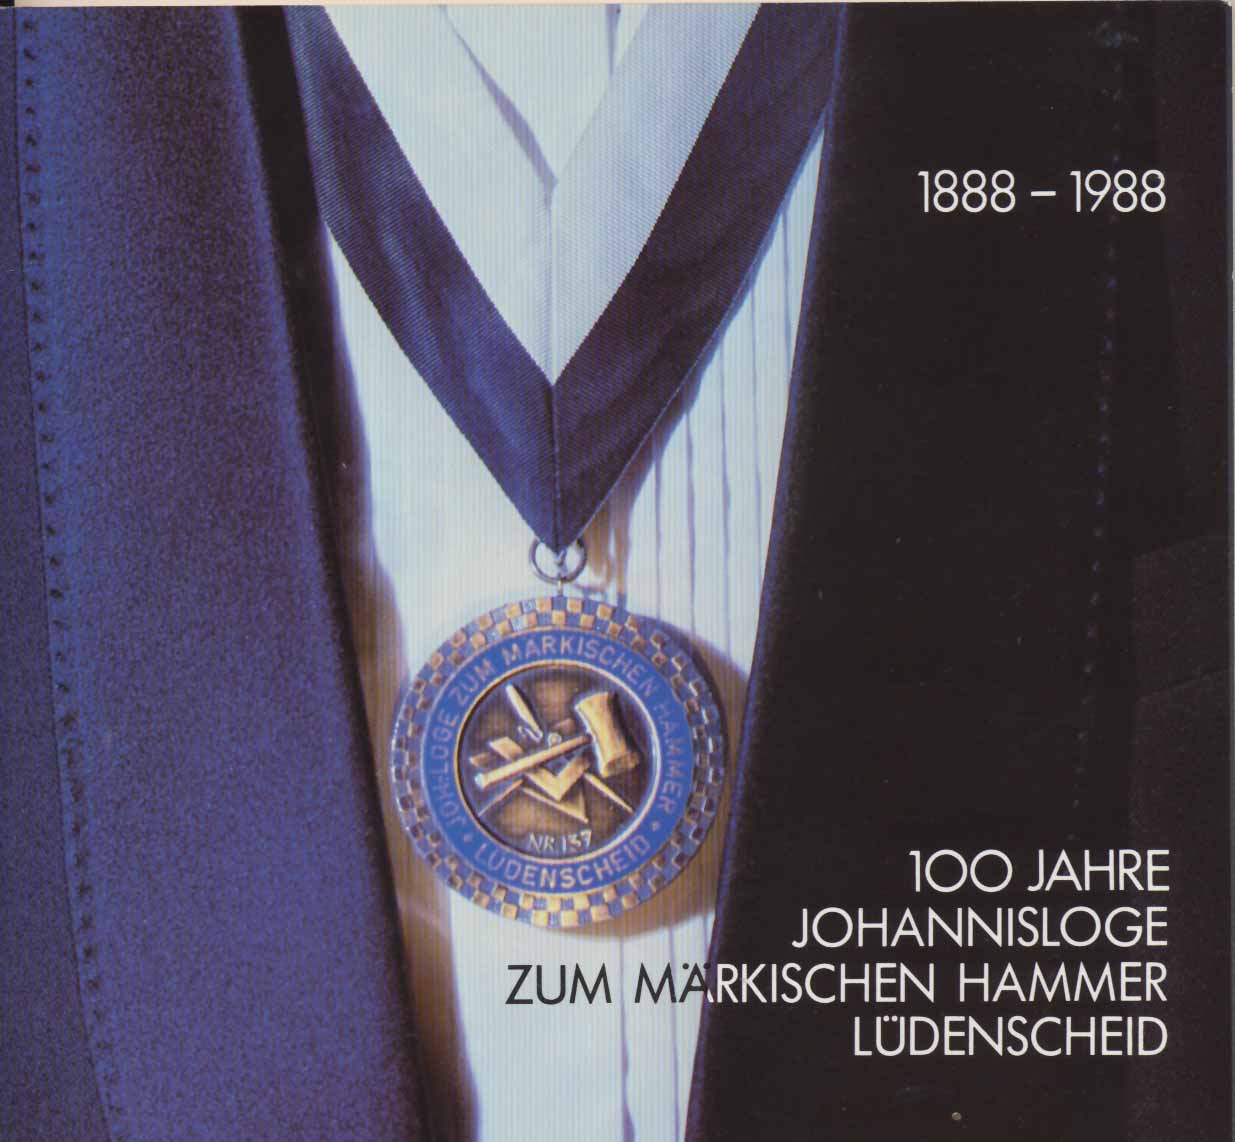 100 Jahre Johannisloge  " Zum Märkischen Hammer Lüdenscheid ". -  1888 - 1988.